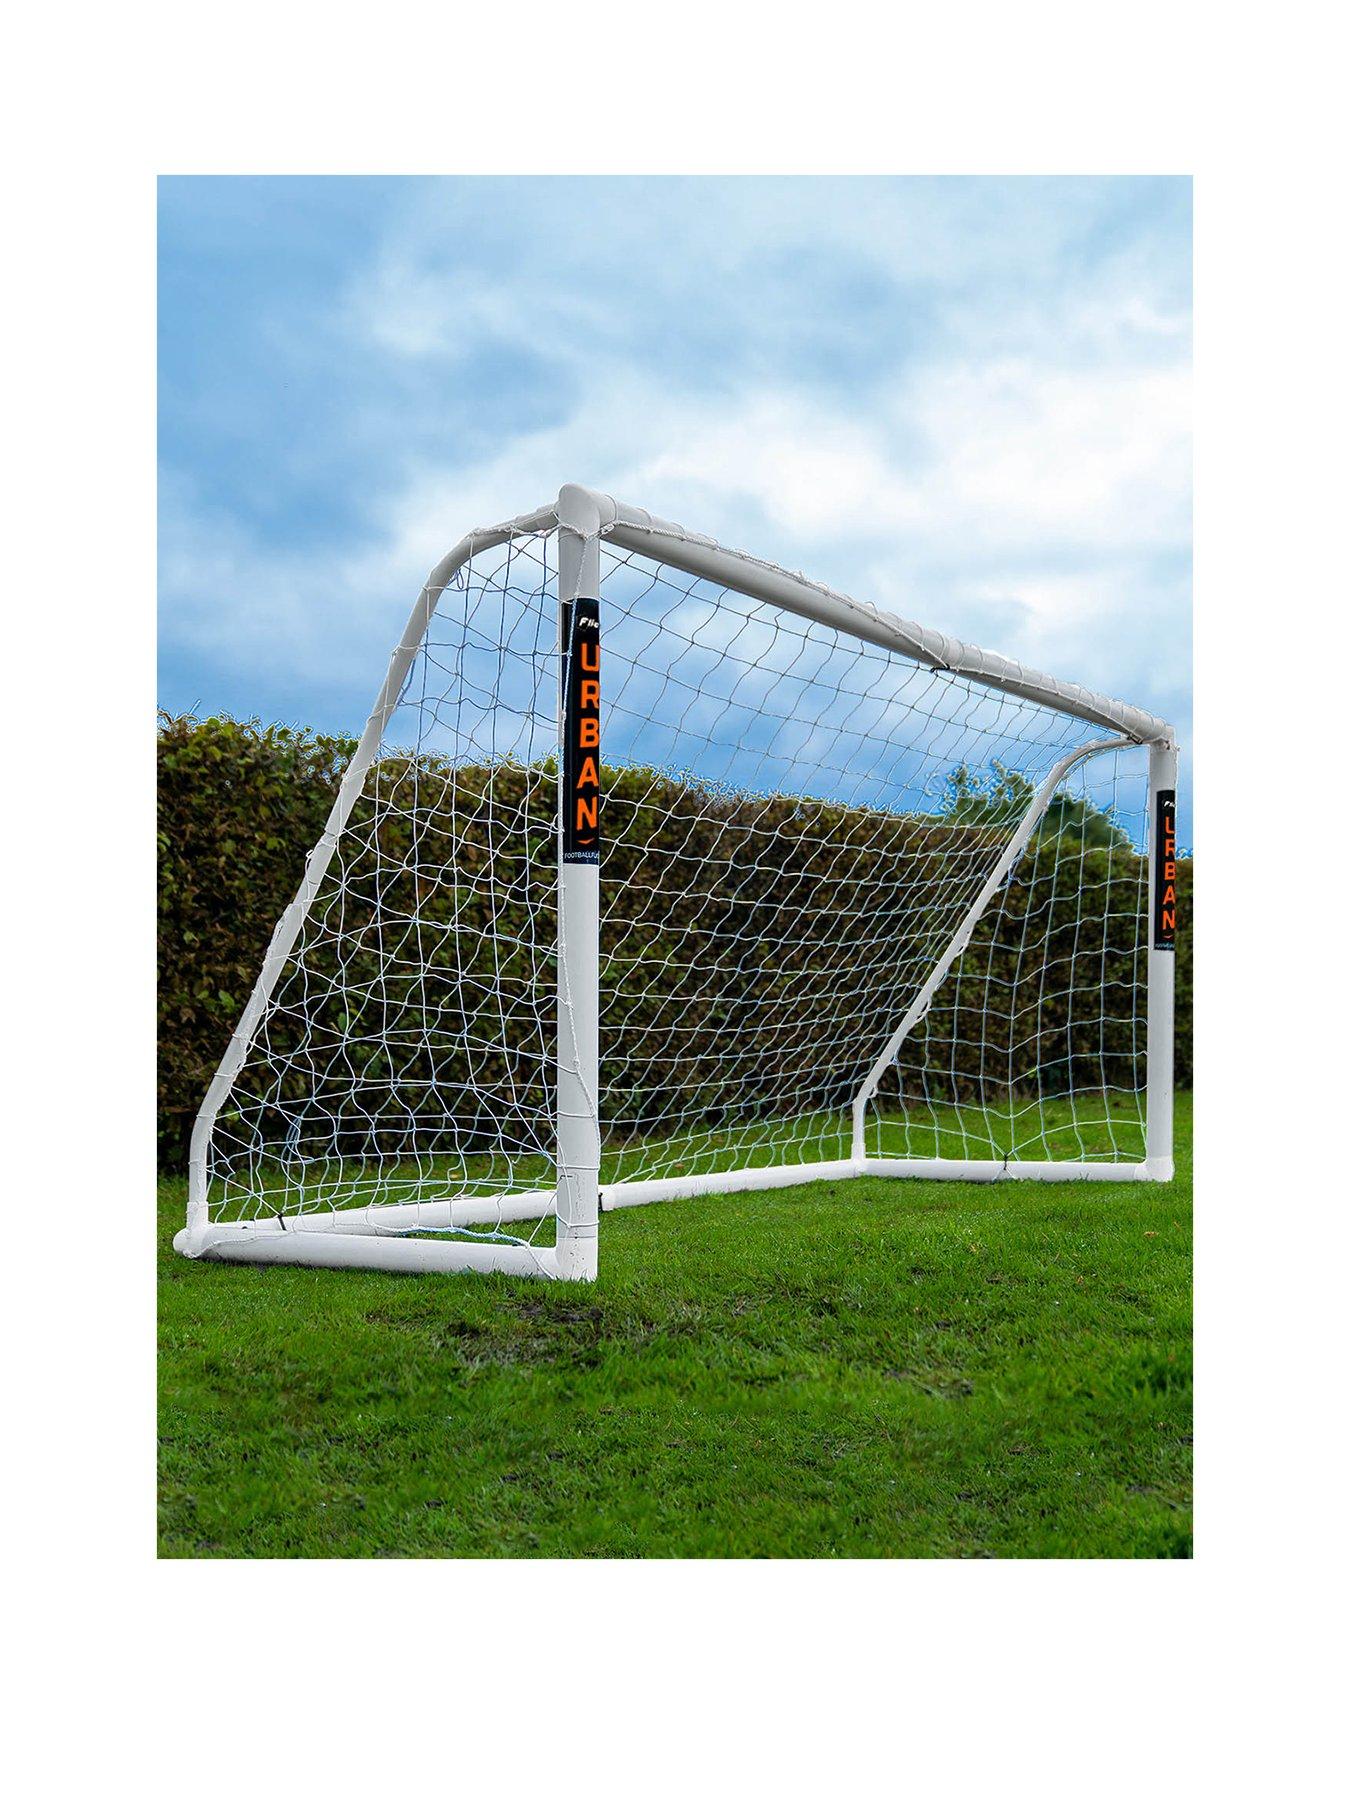 Details about   Soccer Goal Net Football Nets Mesh Football Accessories Outdoor Sport Activity 